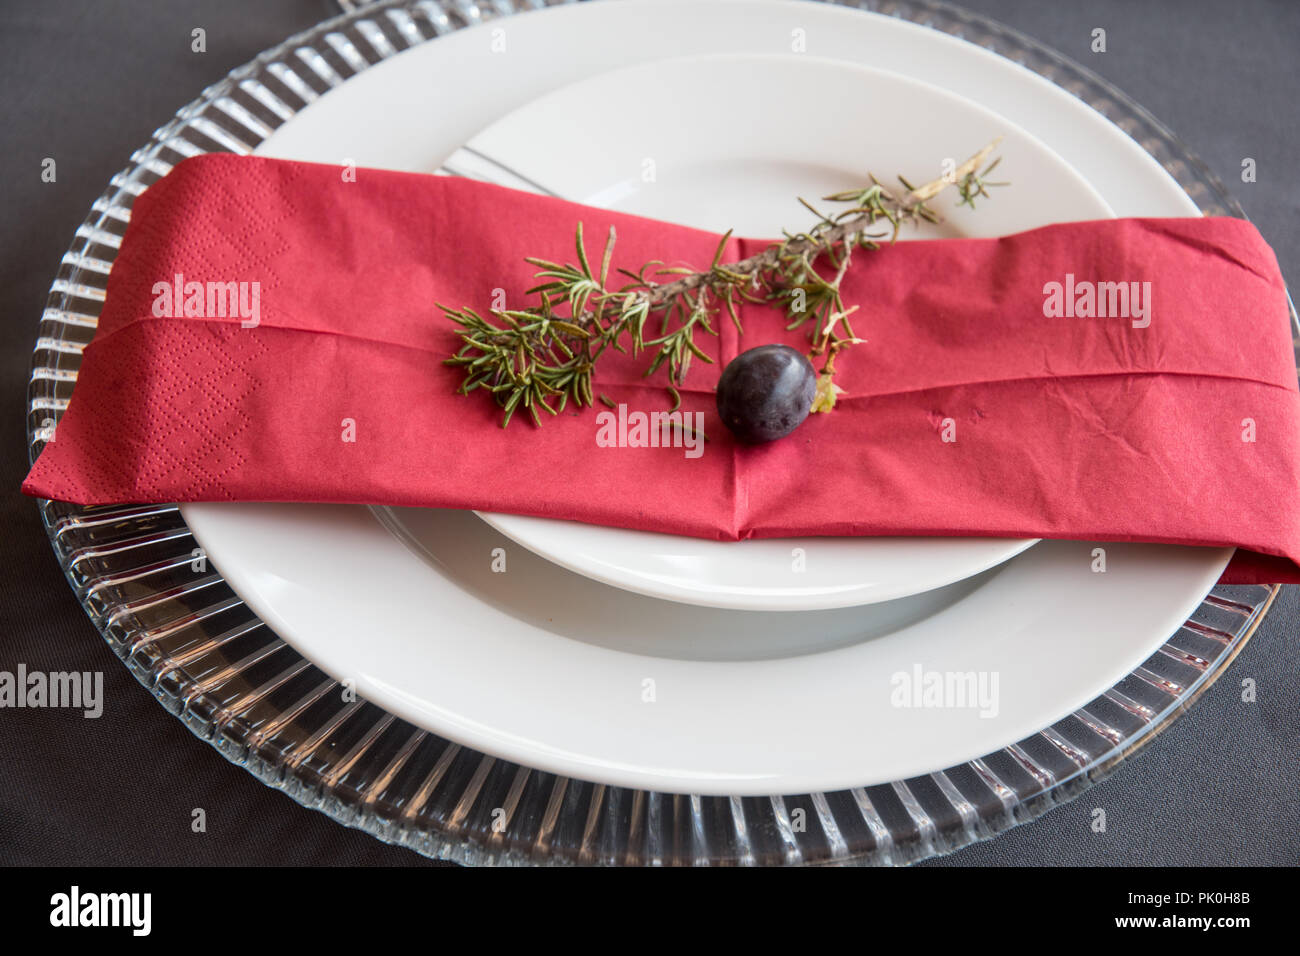 La table du déjeuner ensemble avec des plaques en gris et blanc, de belles assiettes, serviette rouge, petite branche d'arbre décoratif, deux cépages avec décor de fruits et fleurs Banque D'Images